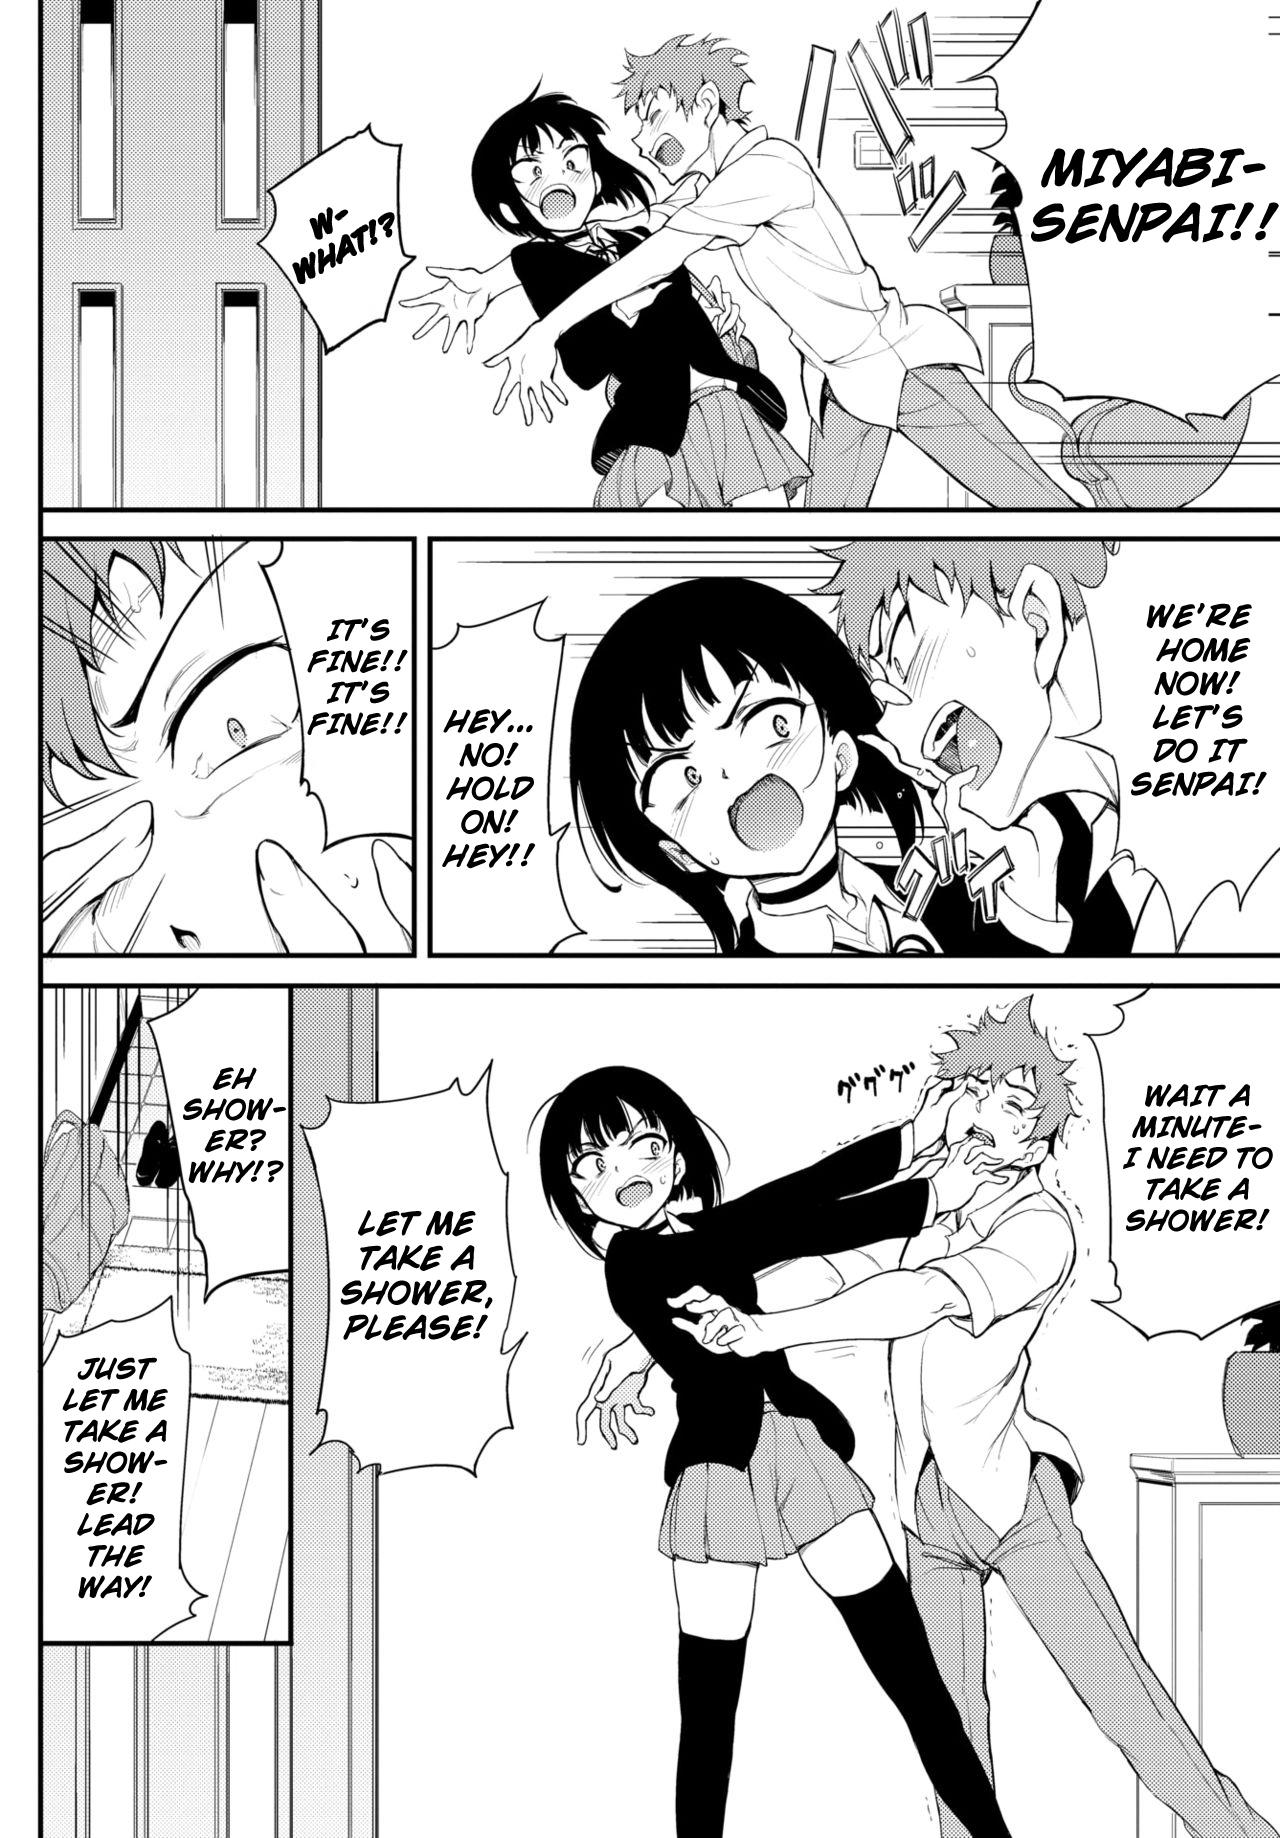 Exgirlfriend Miyabi na Senpai 2 Students - Page 2